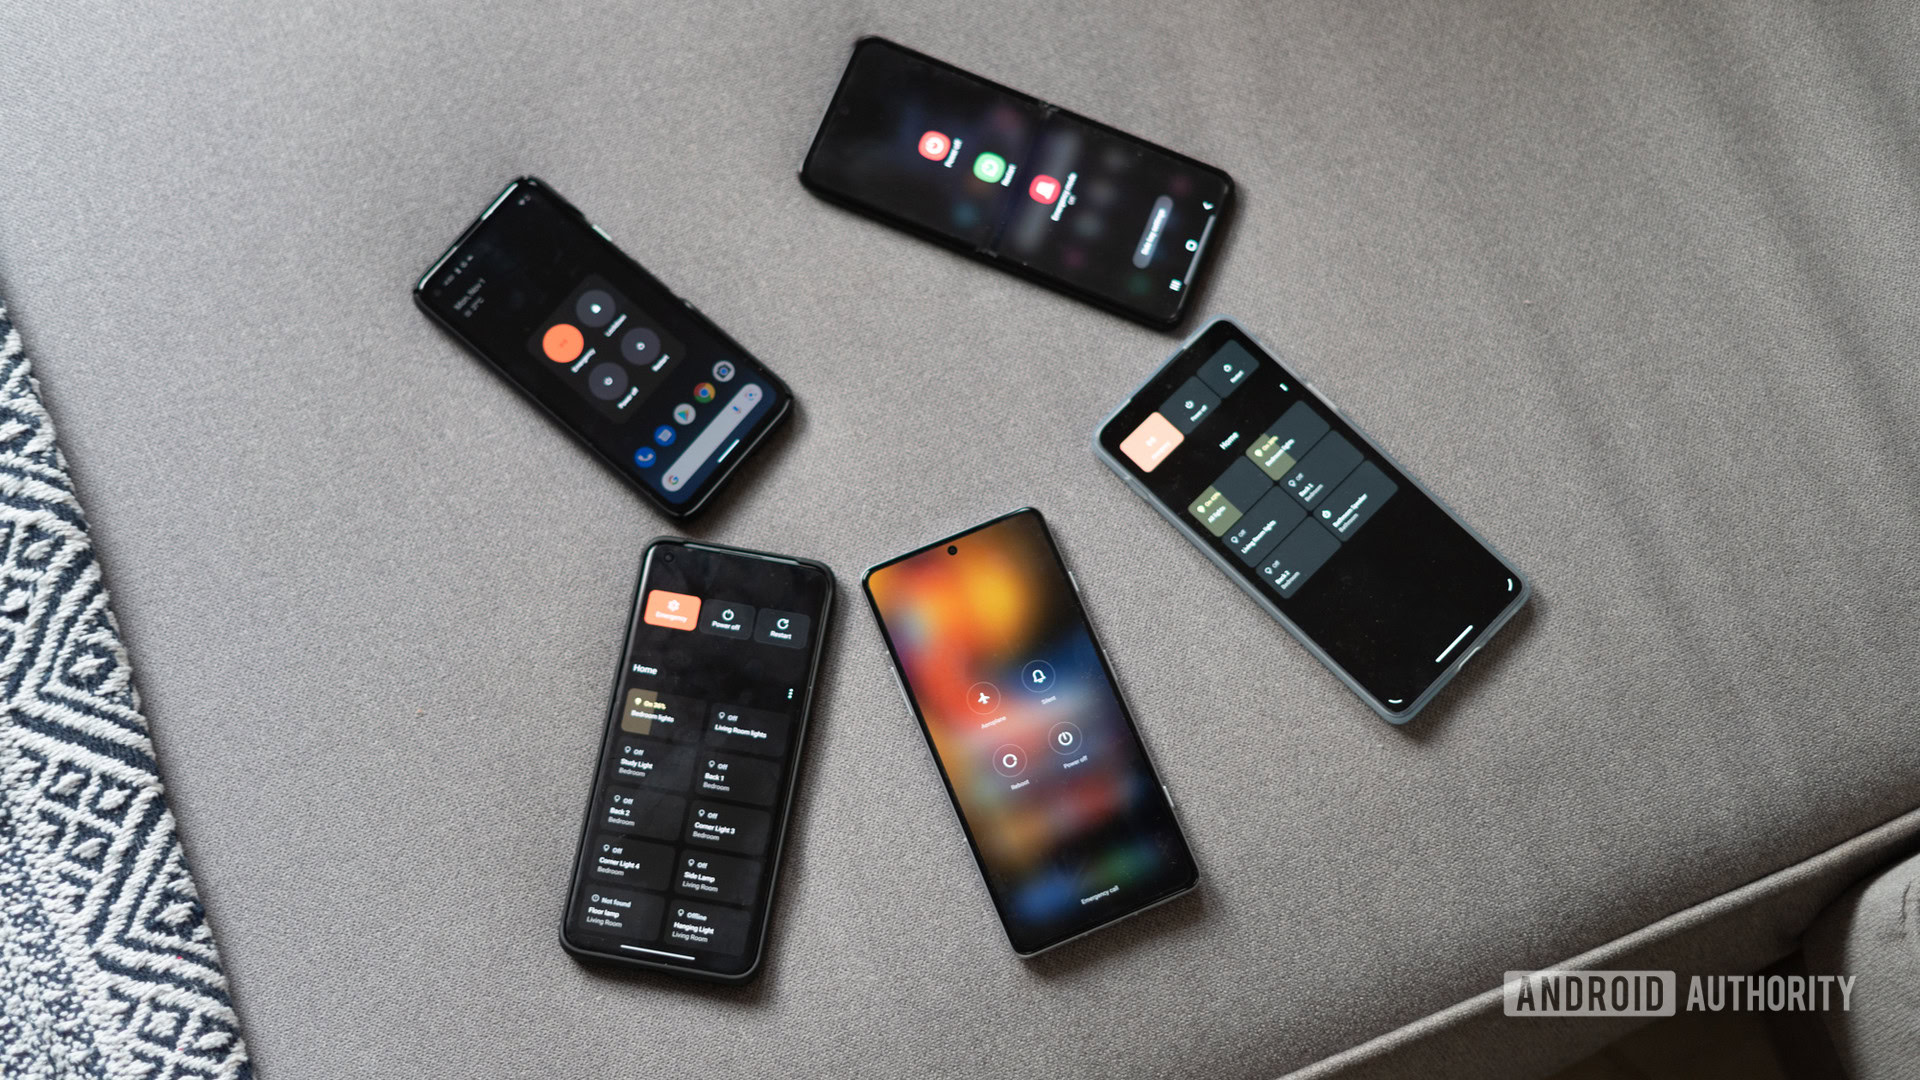 botones de encendido en teléfonos Android de arriba hacia abajo que muestran varios teléfonos